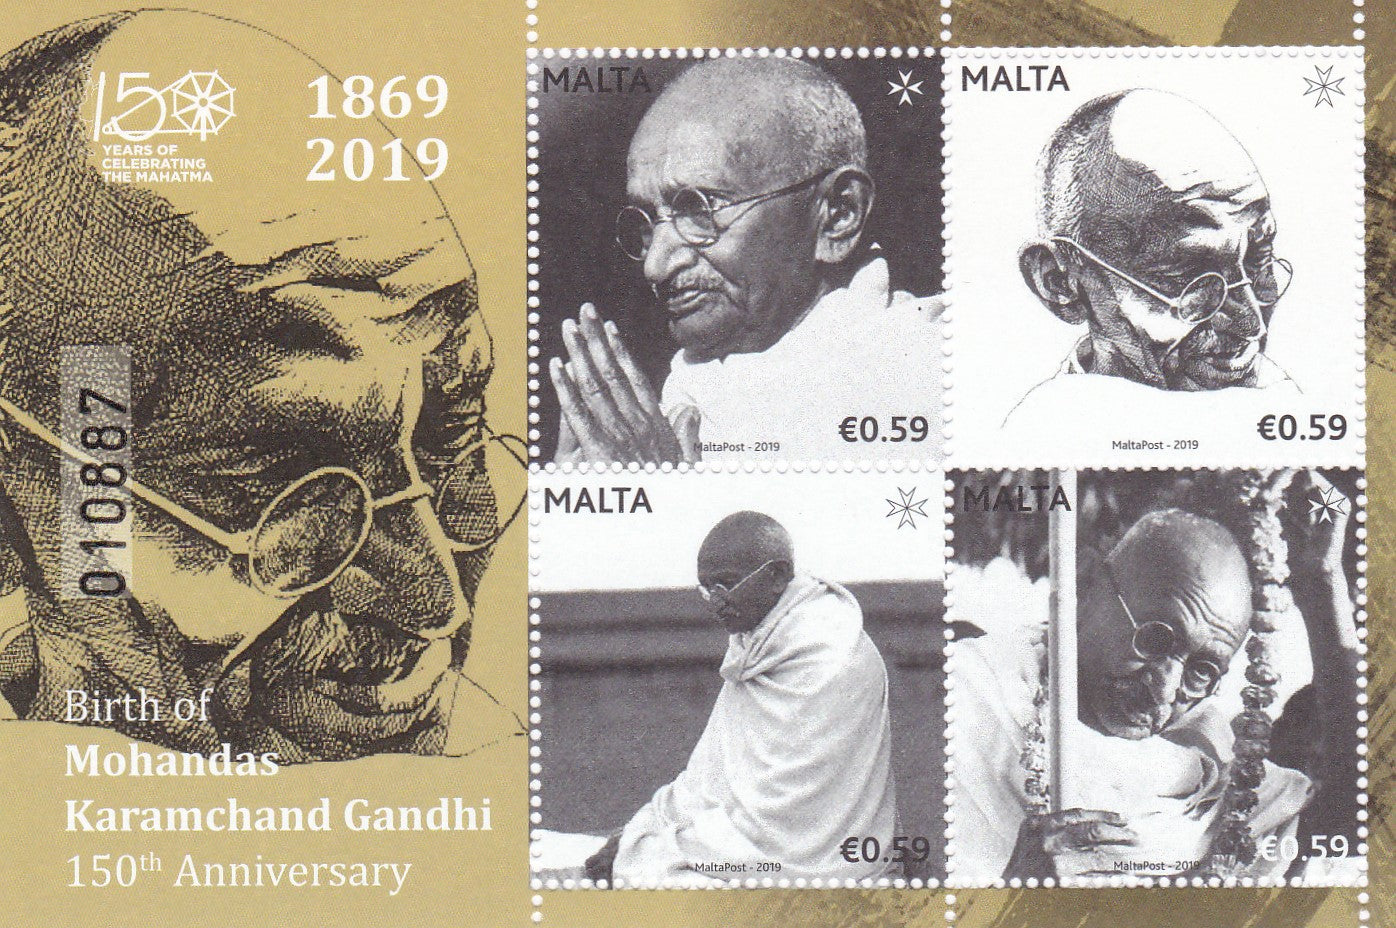 माल्टा-महात्मा गांधी एमएस की 150वीं वर्षगांठ